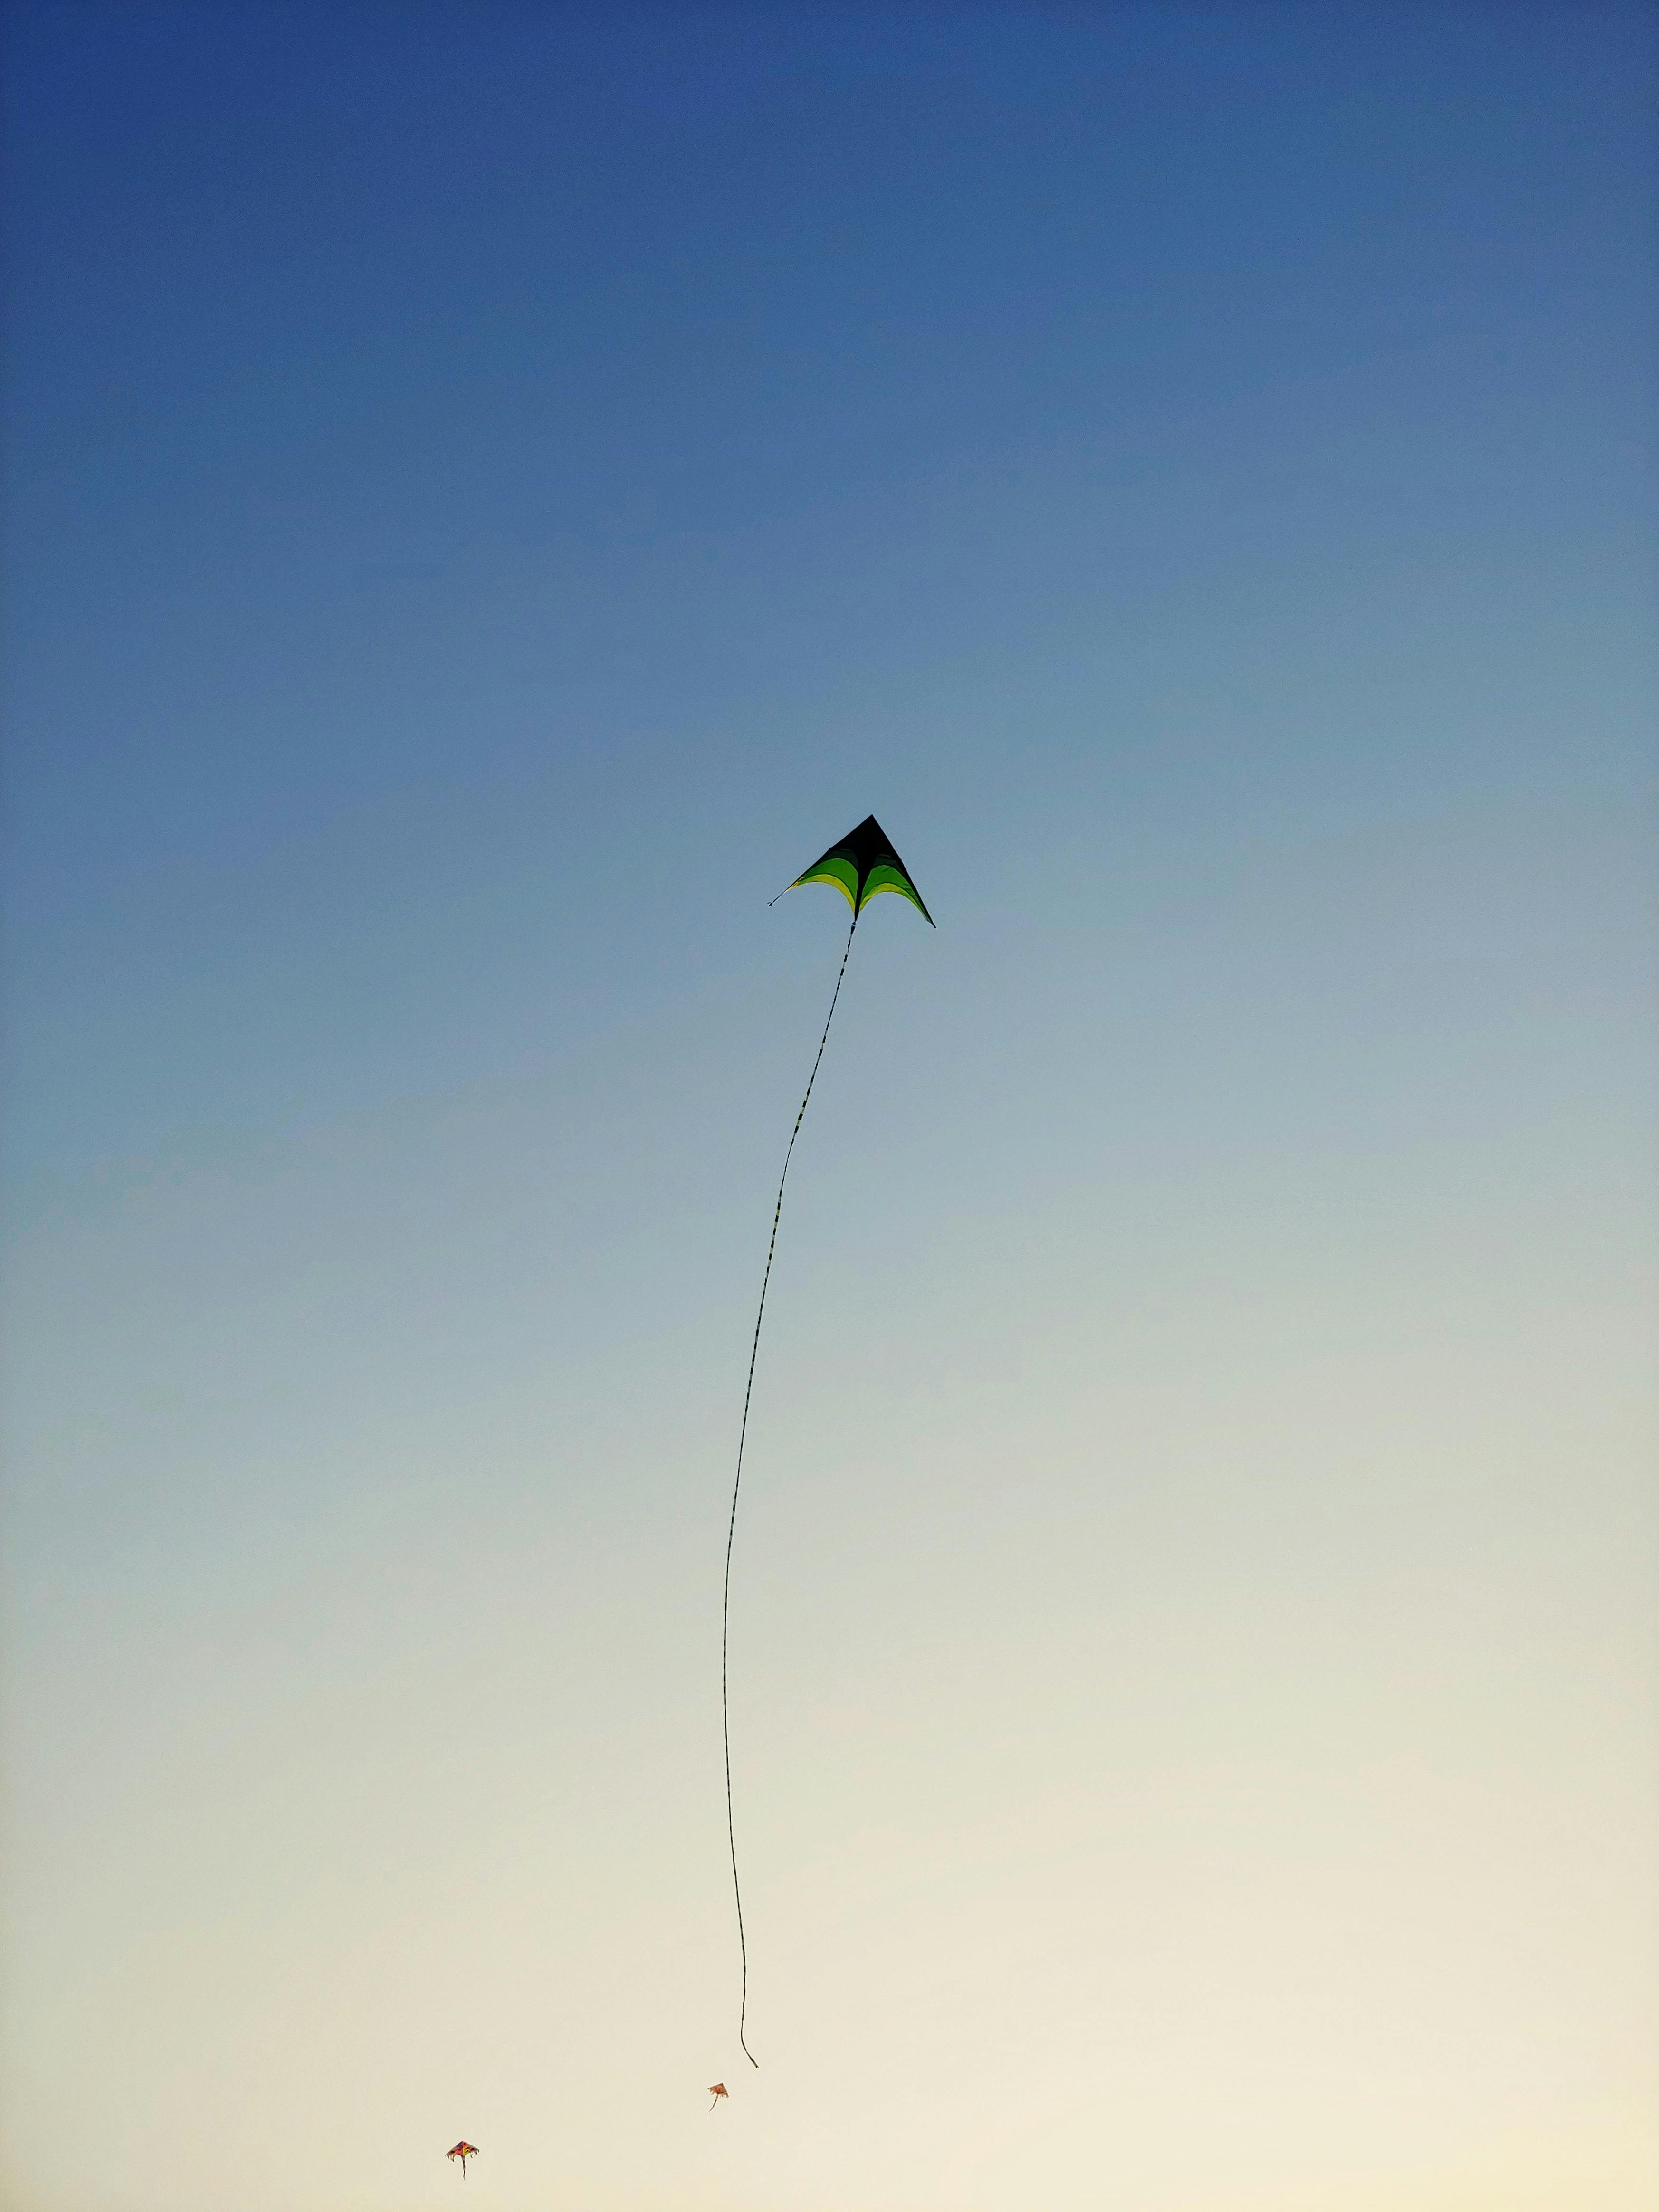 The kite tumblr